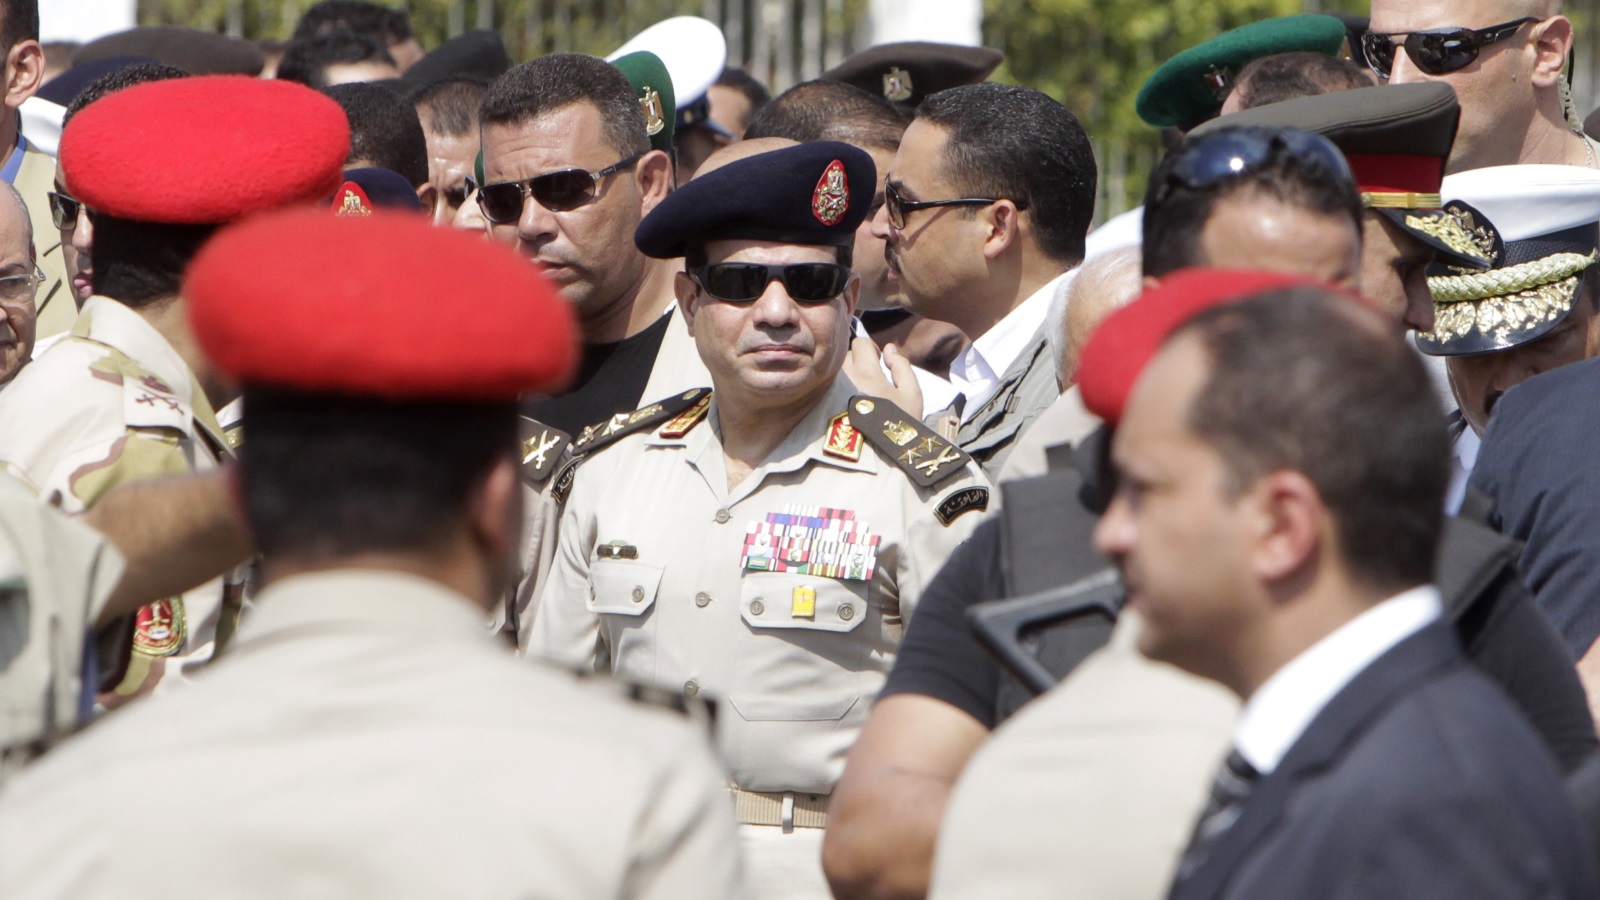 يدرك السيسي القادم من رئاسة المخابرات الحربية طبيعة البيروقراطية المصرية فيما يبدو!